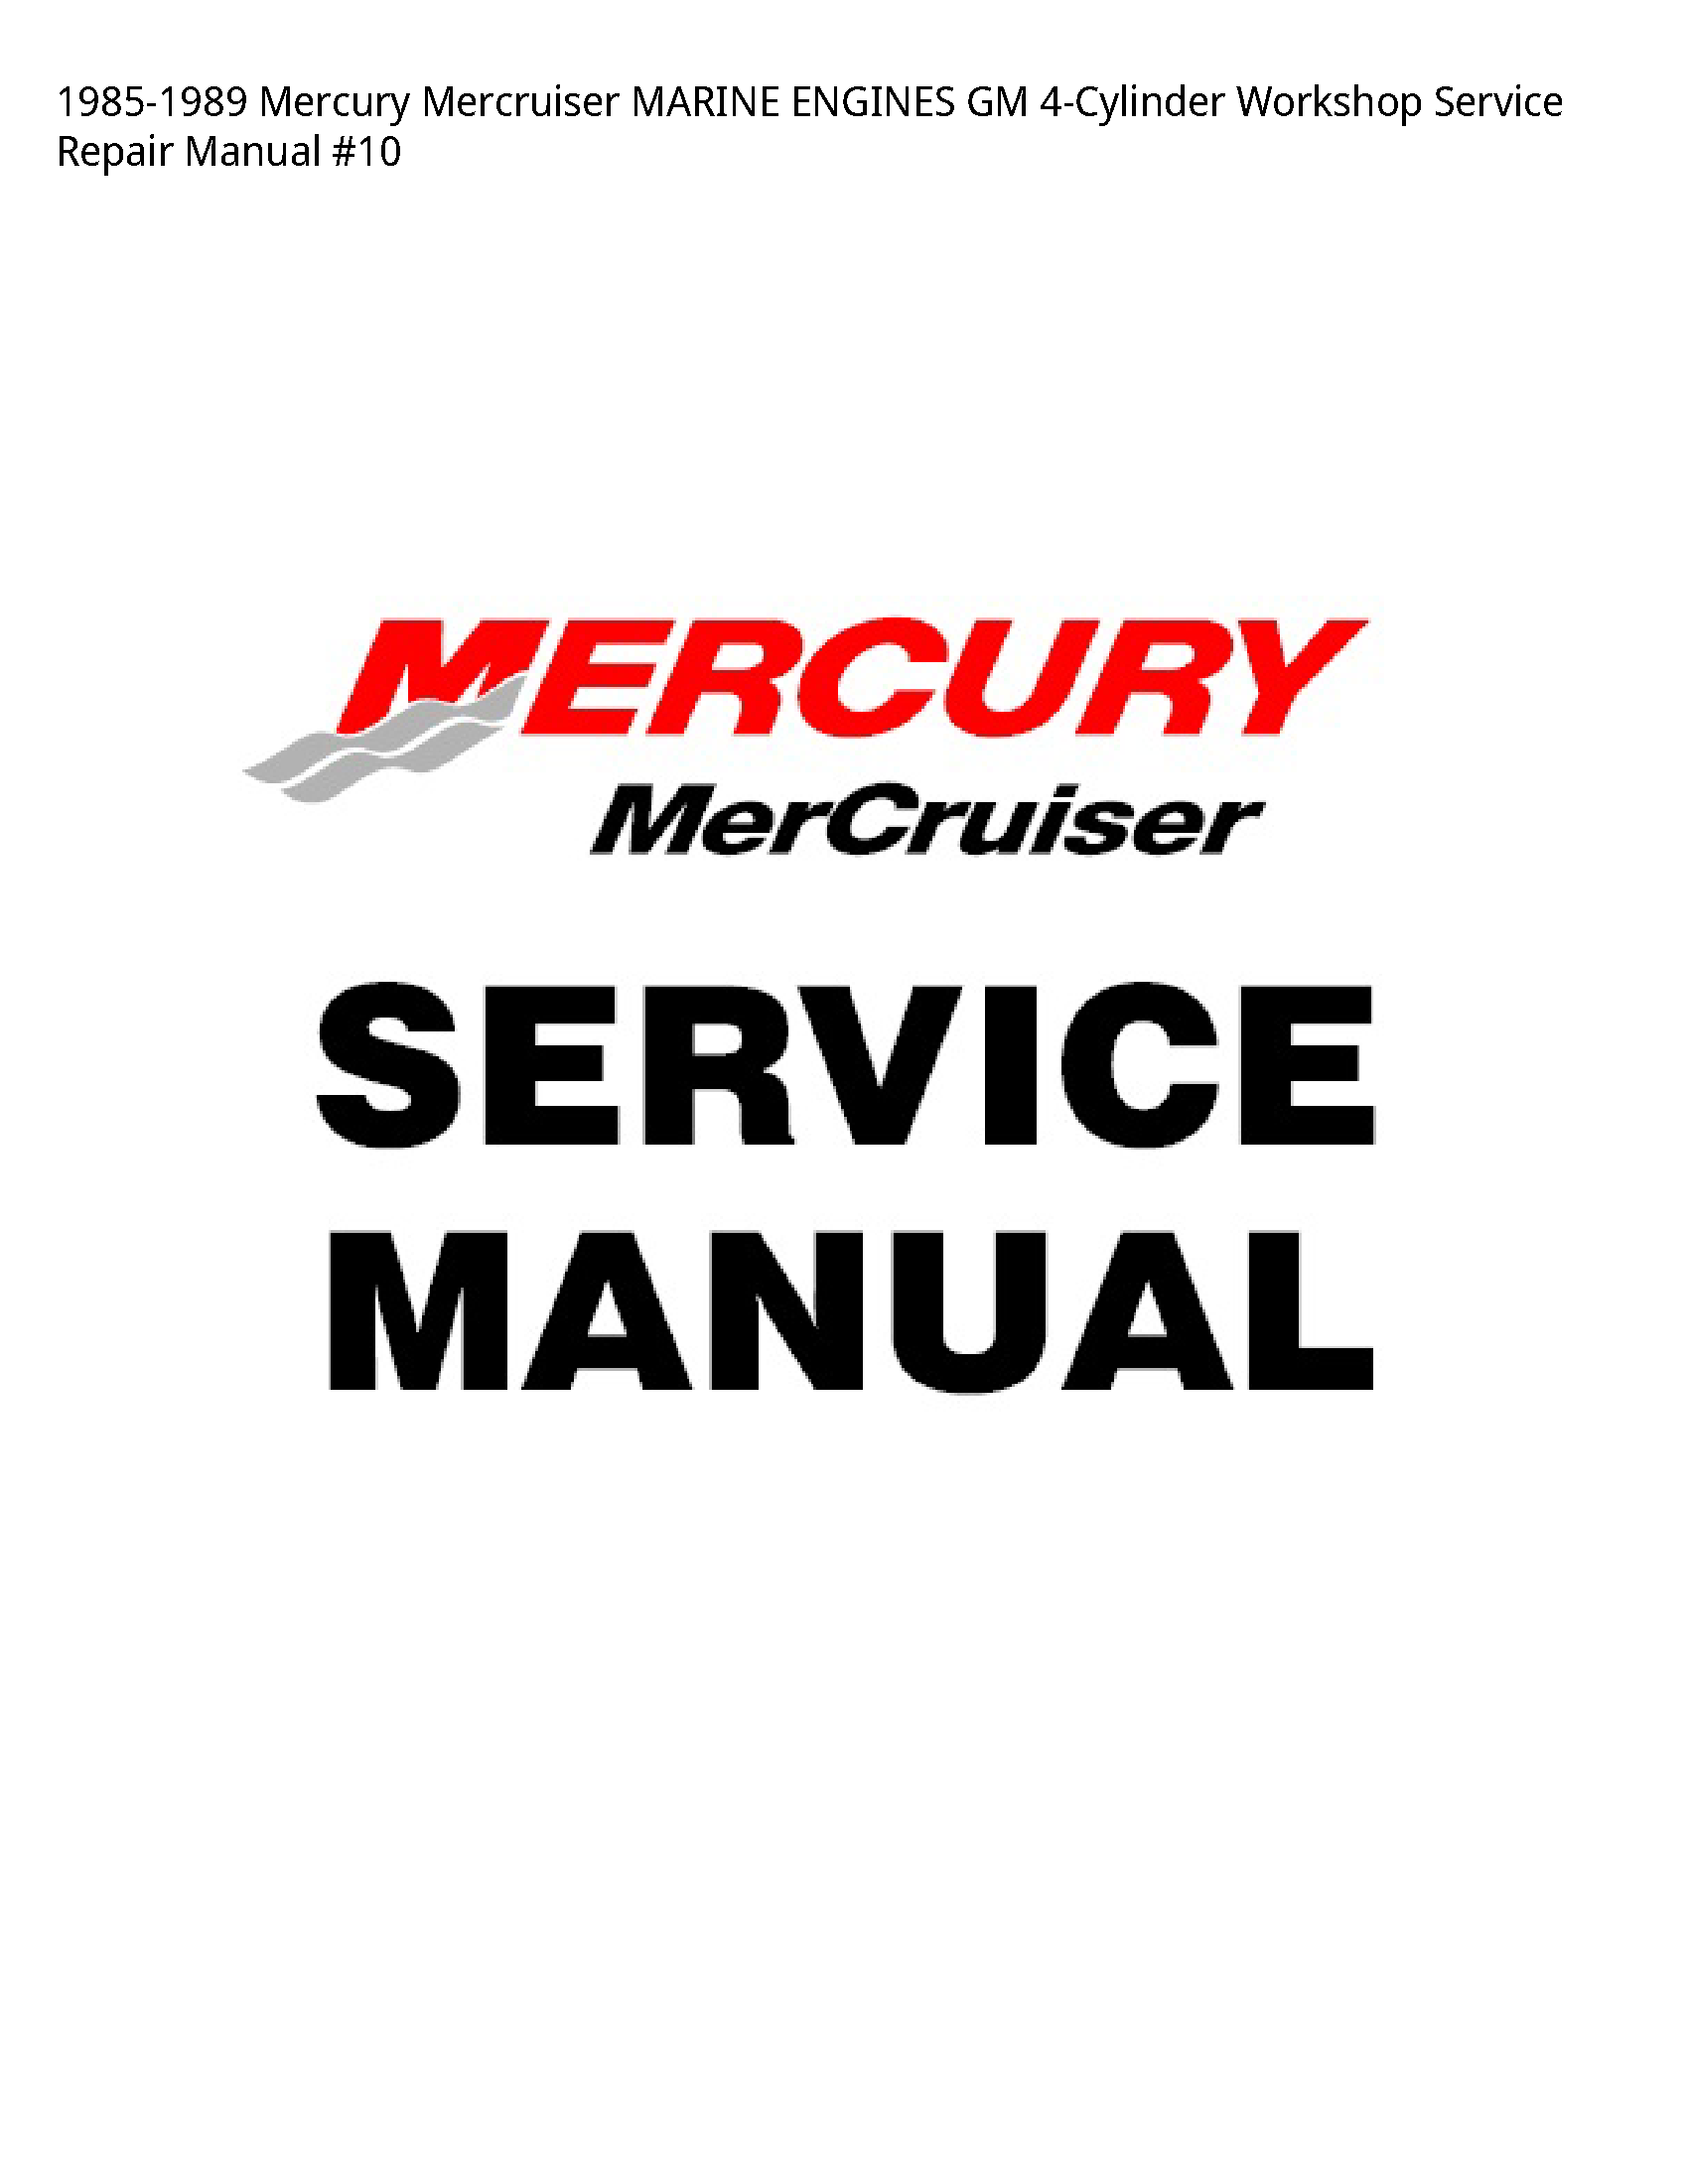 Mercury 4-Cylinder Mercruiser MARINE ENGINES GM manual